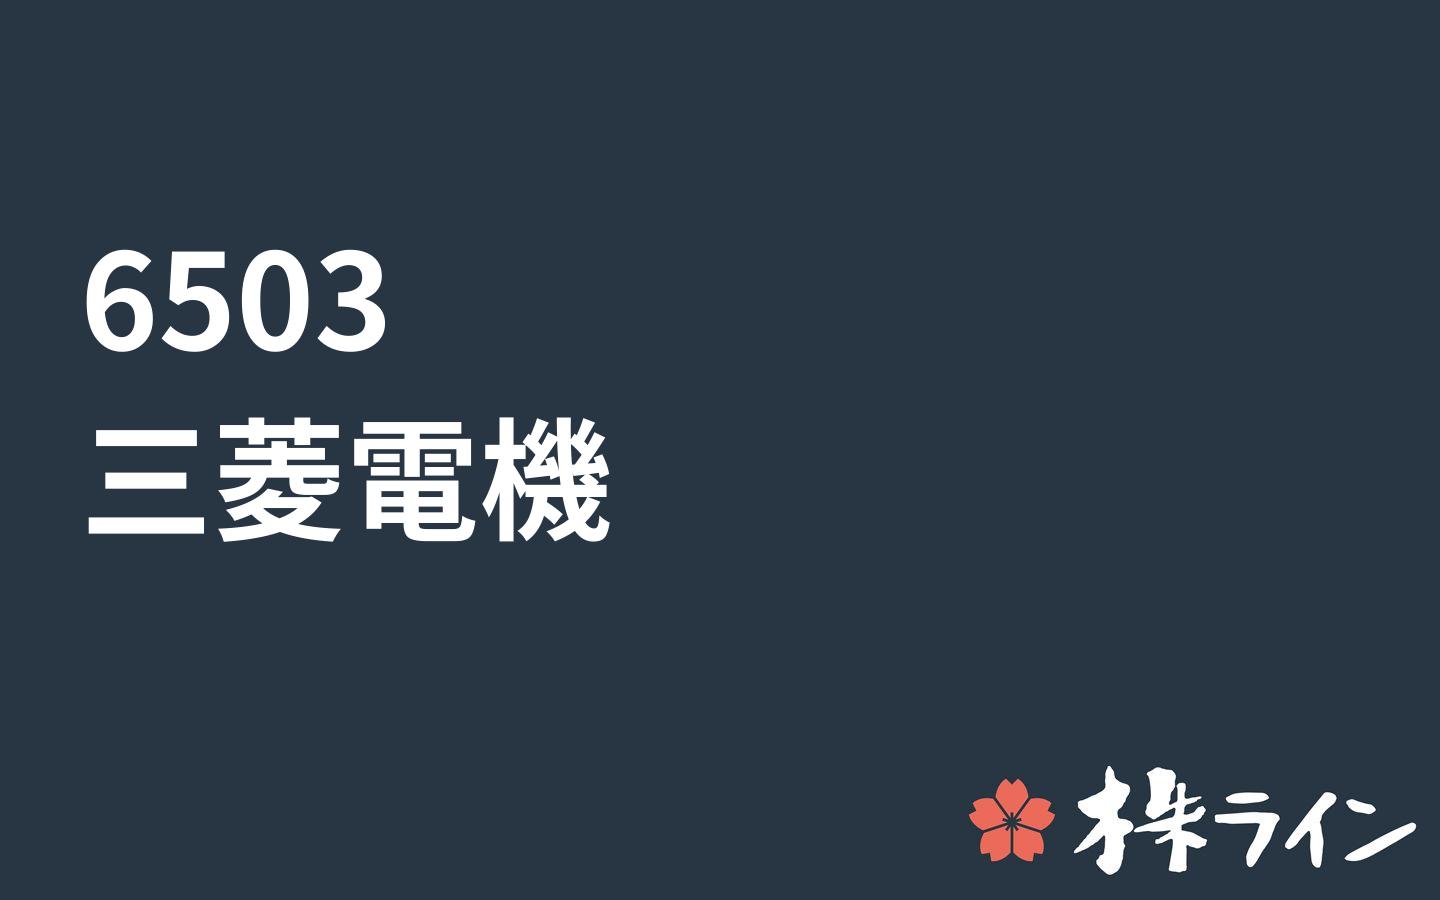 三菱電機 6503 株価予想 ツイッター投資家のリアルタイム売買 株ライン